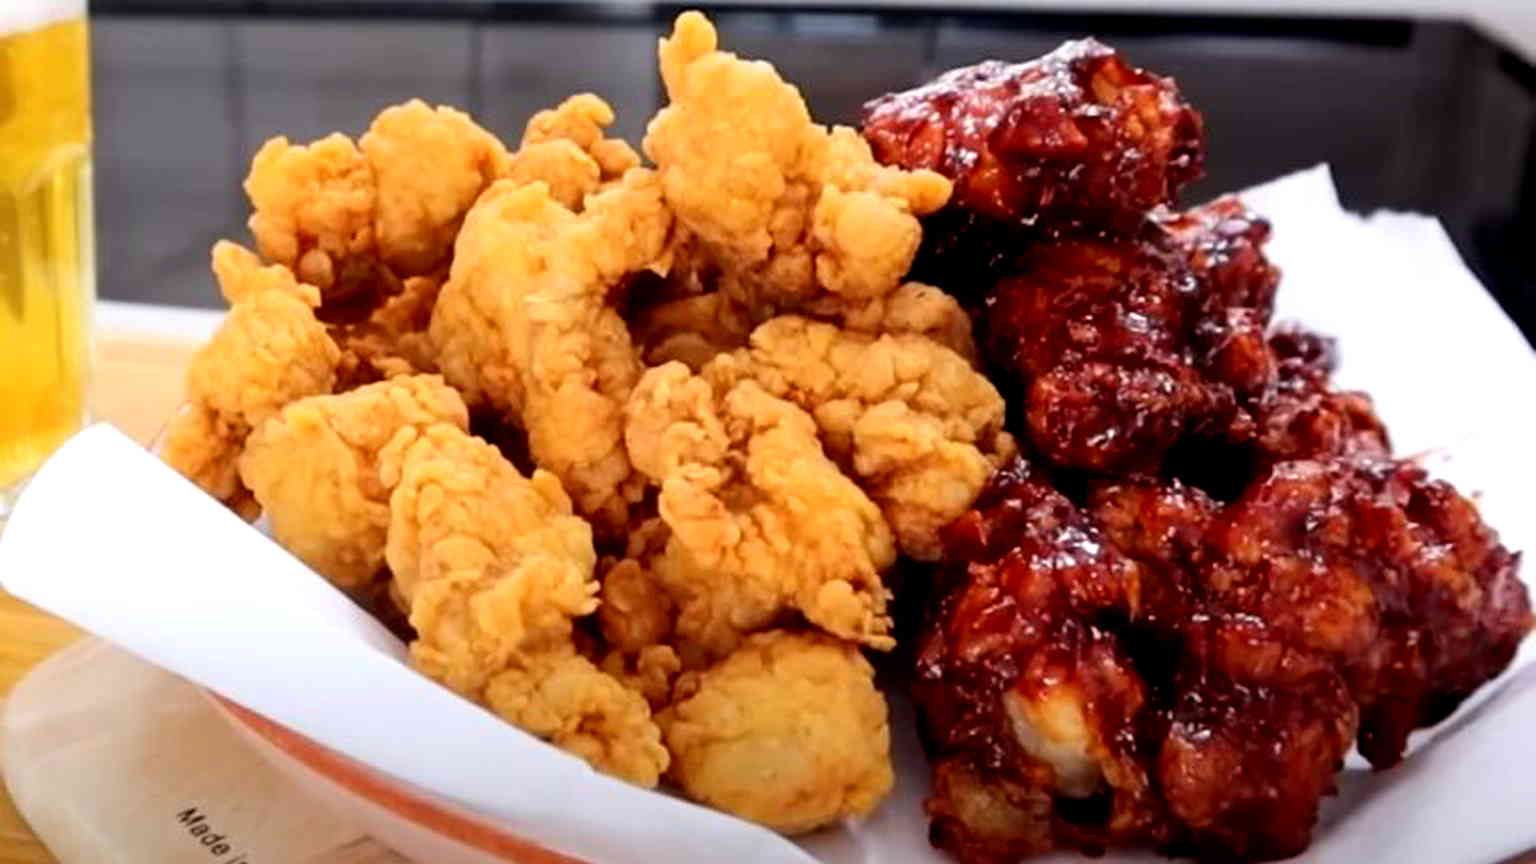 Korean fried chicken is favorite K-food outside of Korea, survey reveals